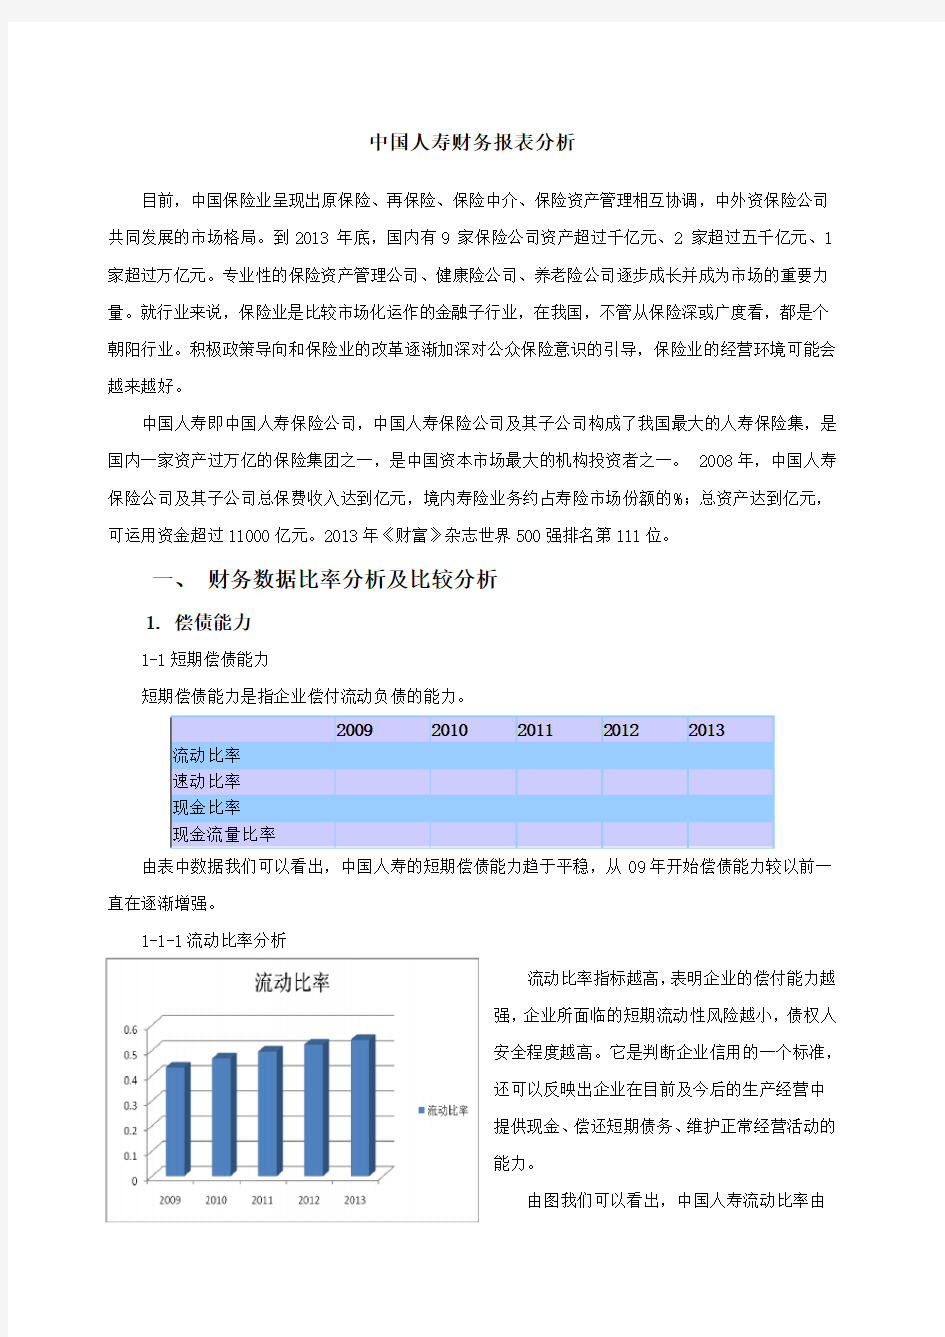 中国人寿 财务报表分析 